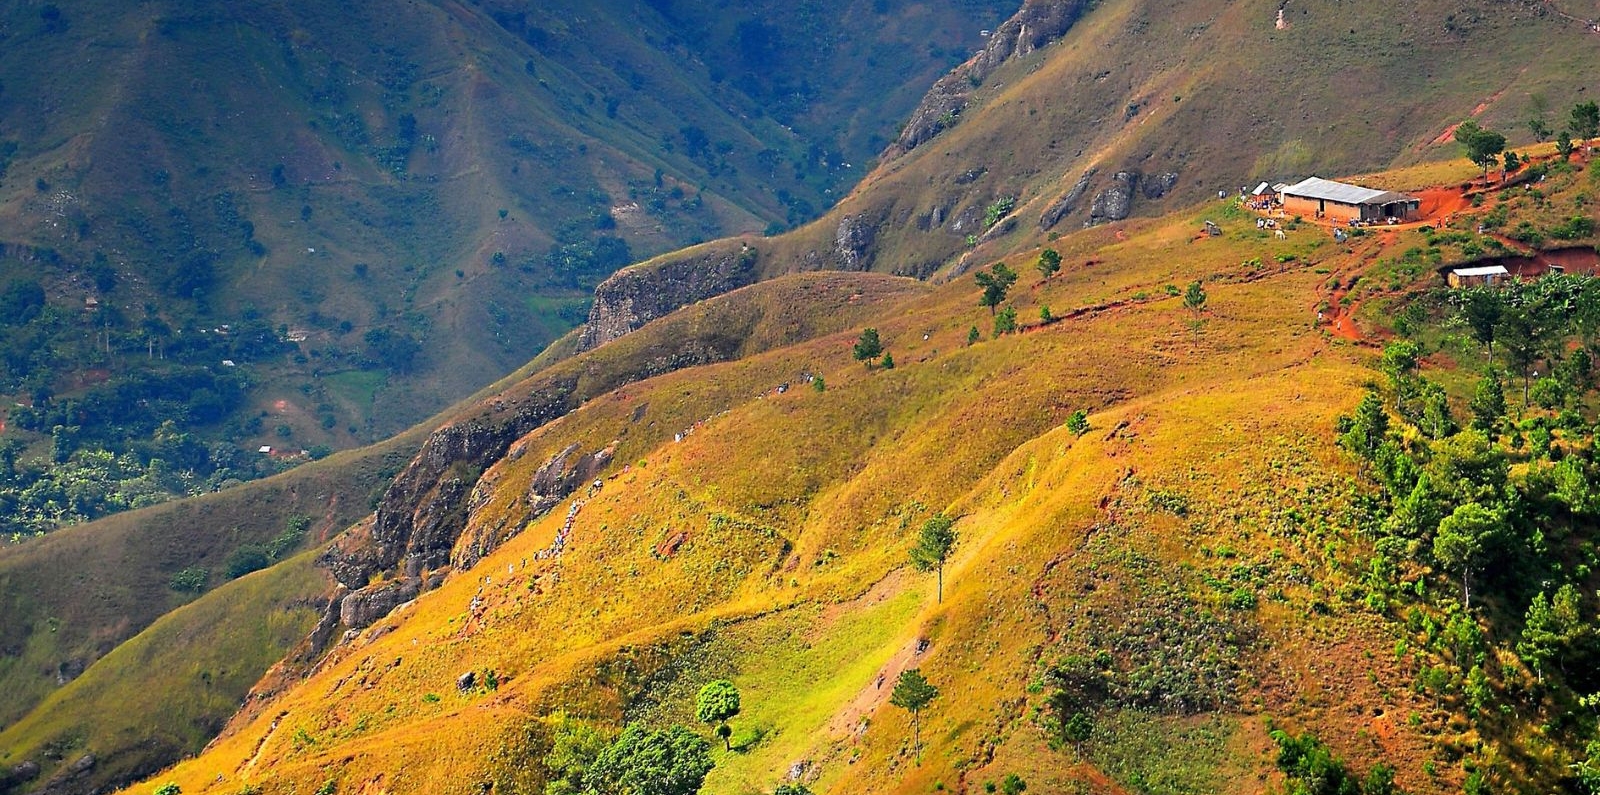 Rural landscape in Haiti